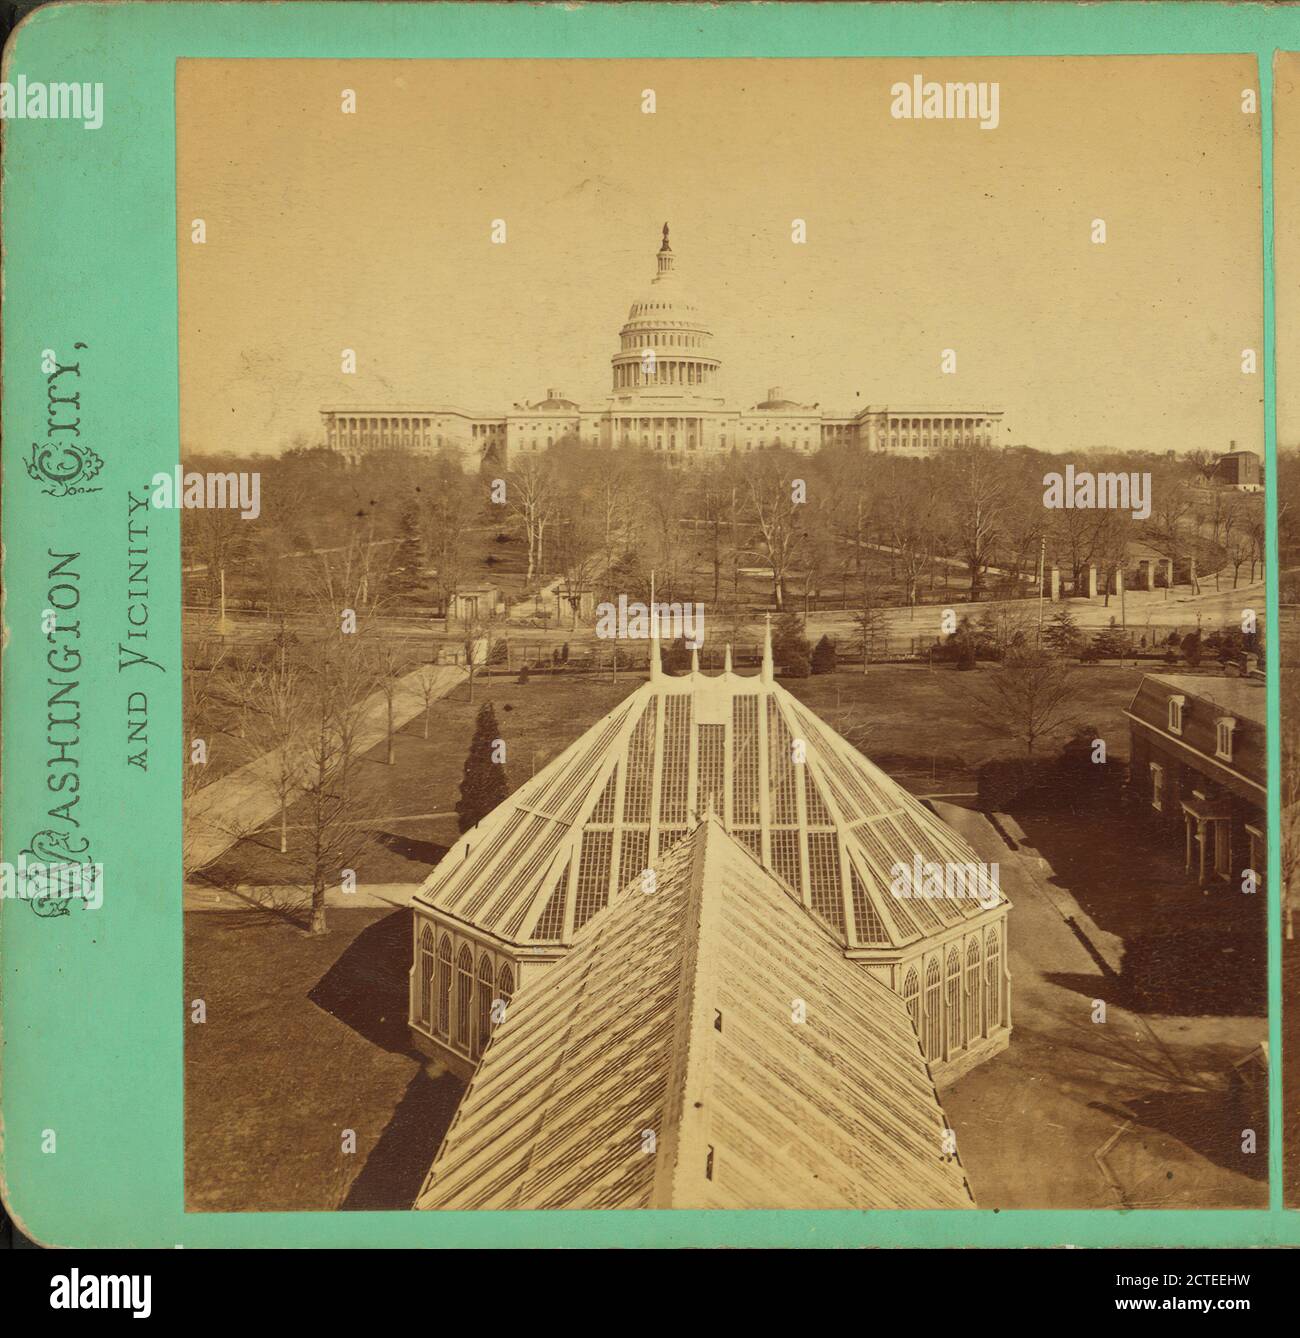 Vue de l'ouest du Capitole des États-Unis, Smillie, T. W. (Thomas William) (1843-1917), Washington (D.C.), États-Unis Banque D'Images